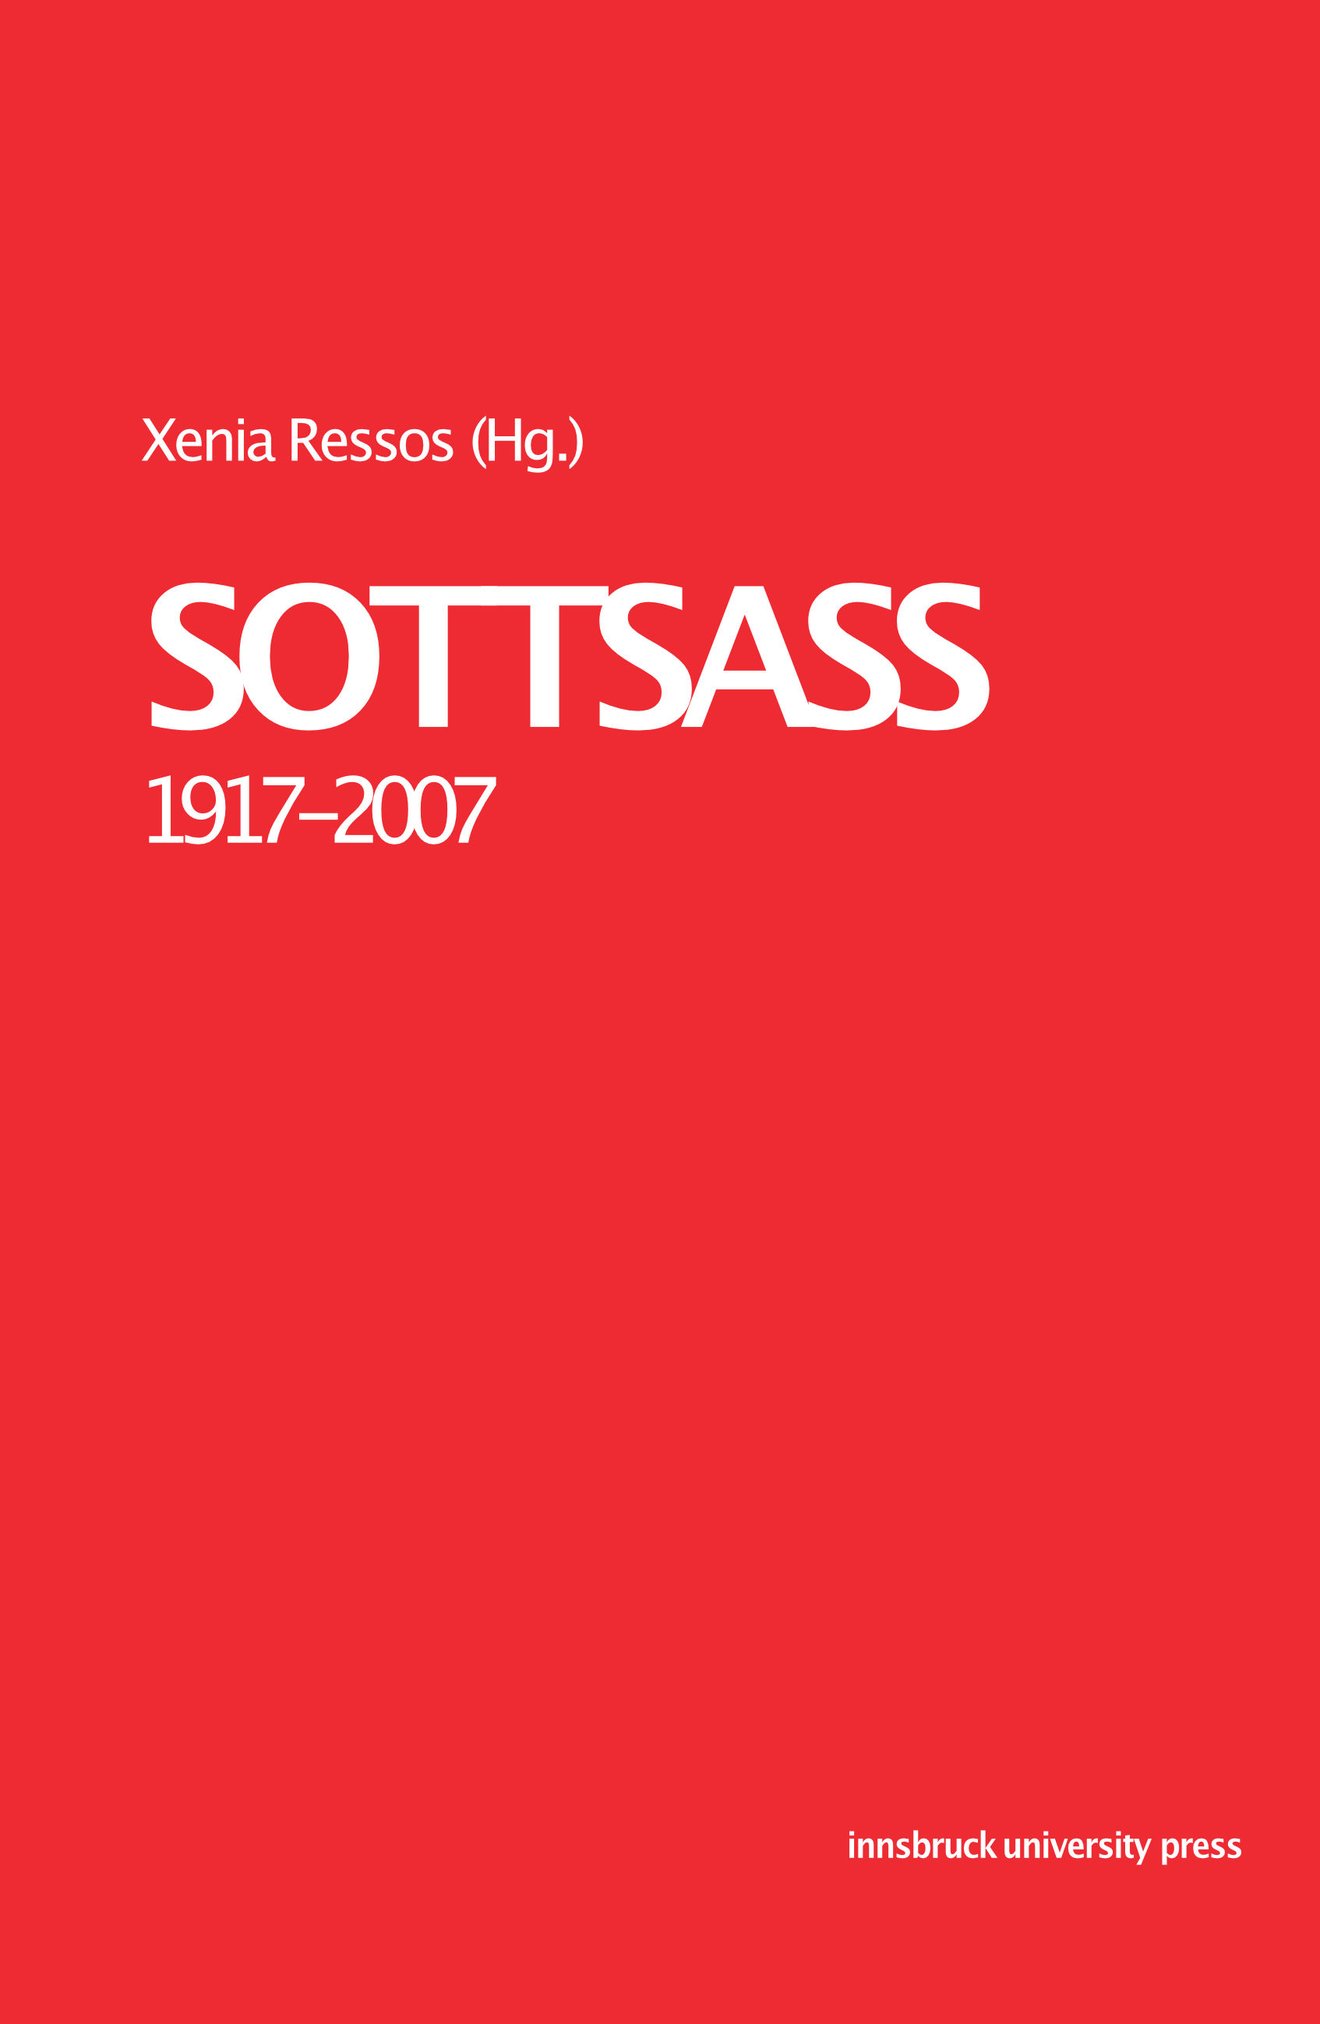 Cover des Buchs „SOTTSASS“